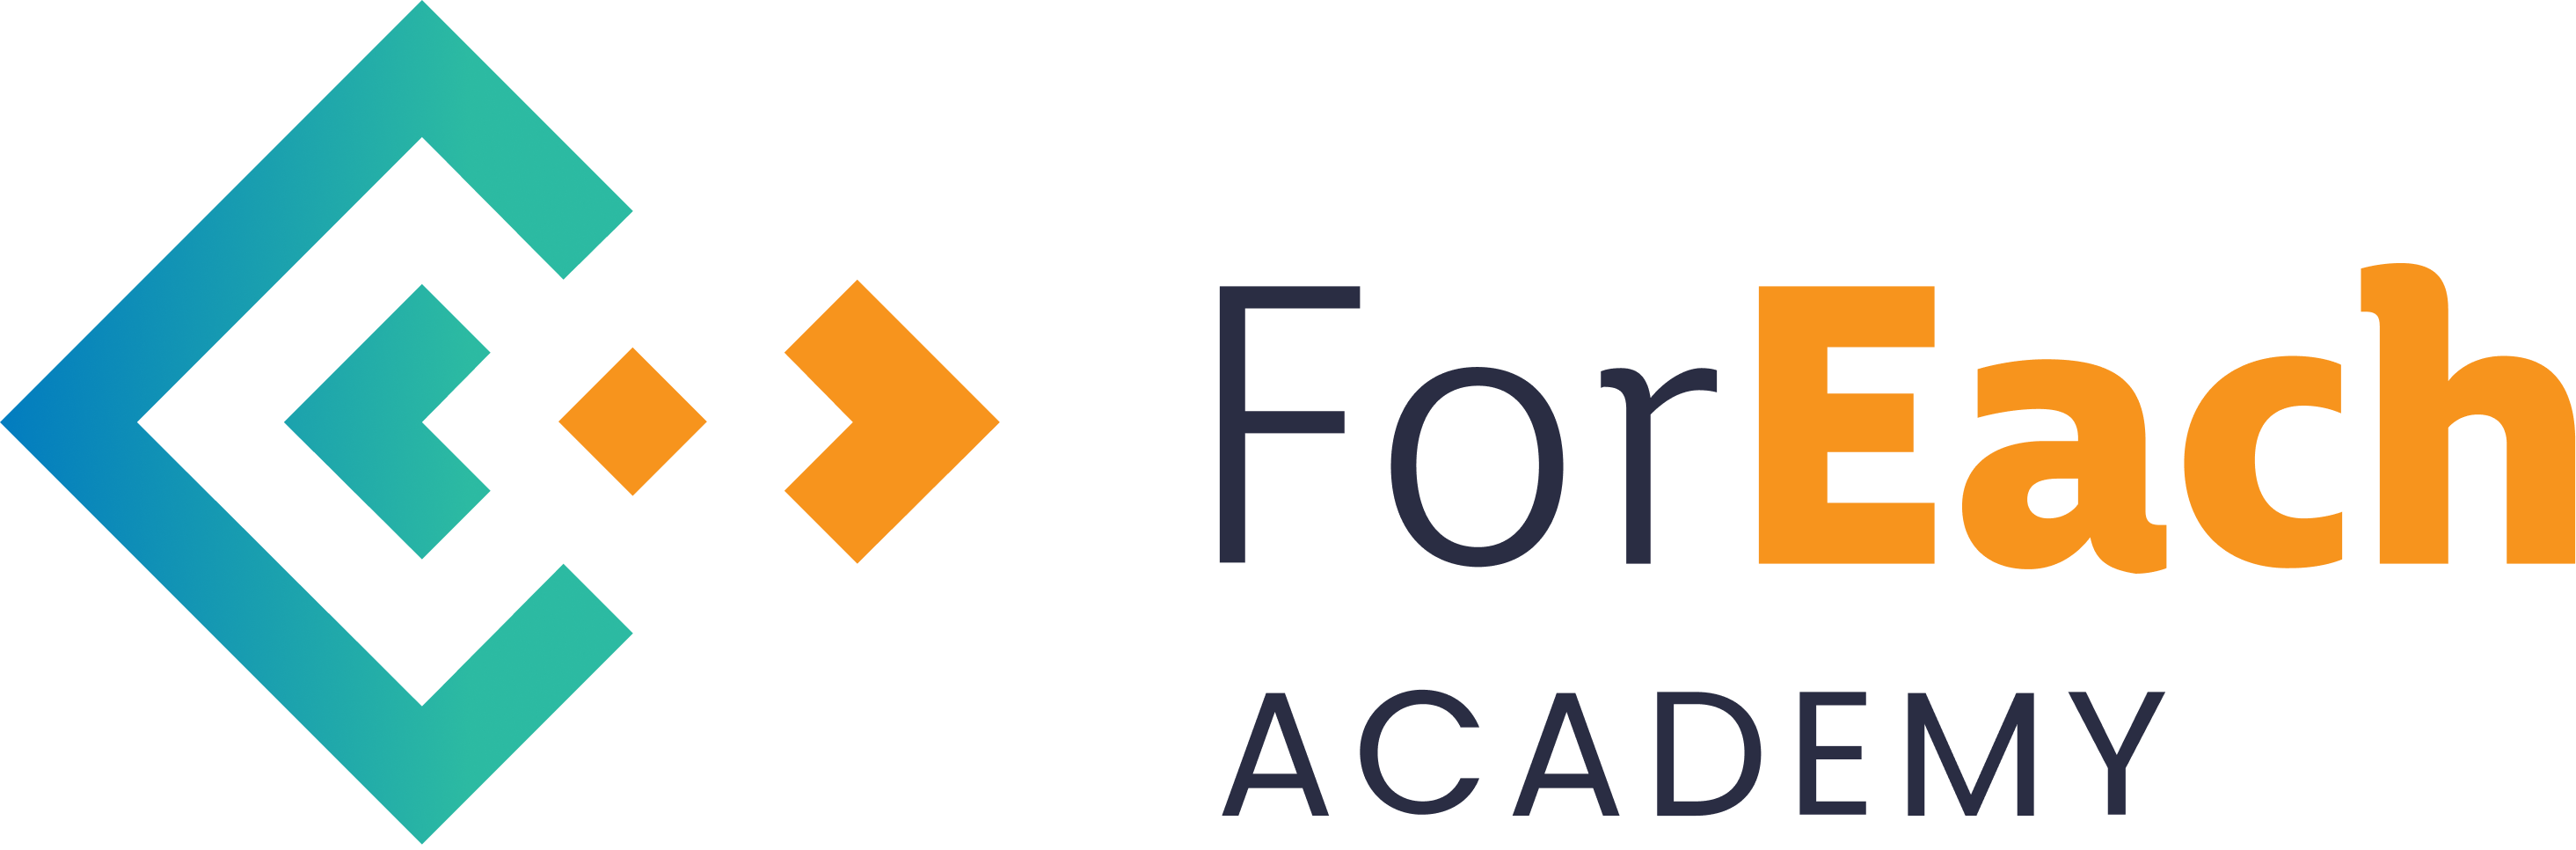 logo FOREACH ACADEMY